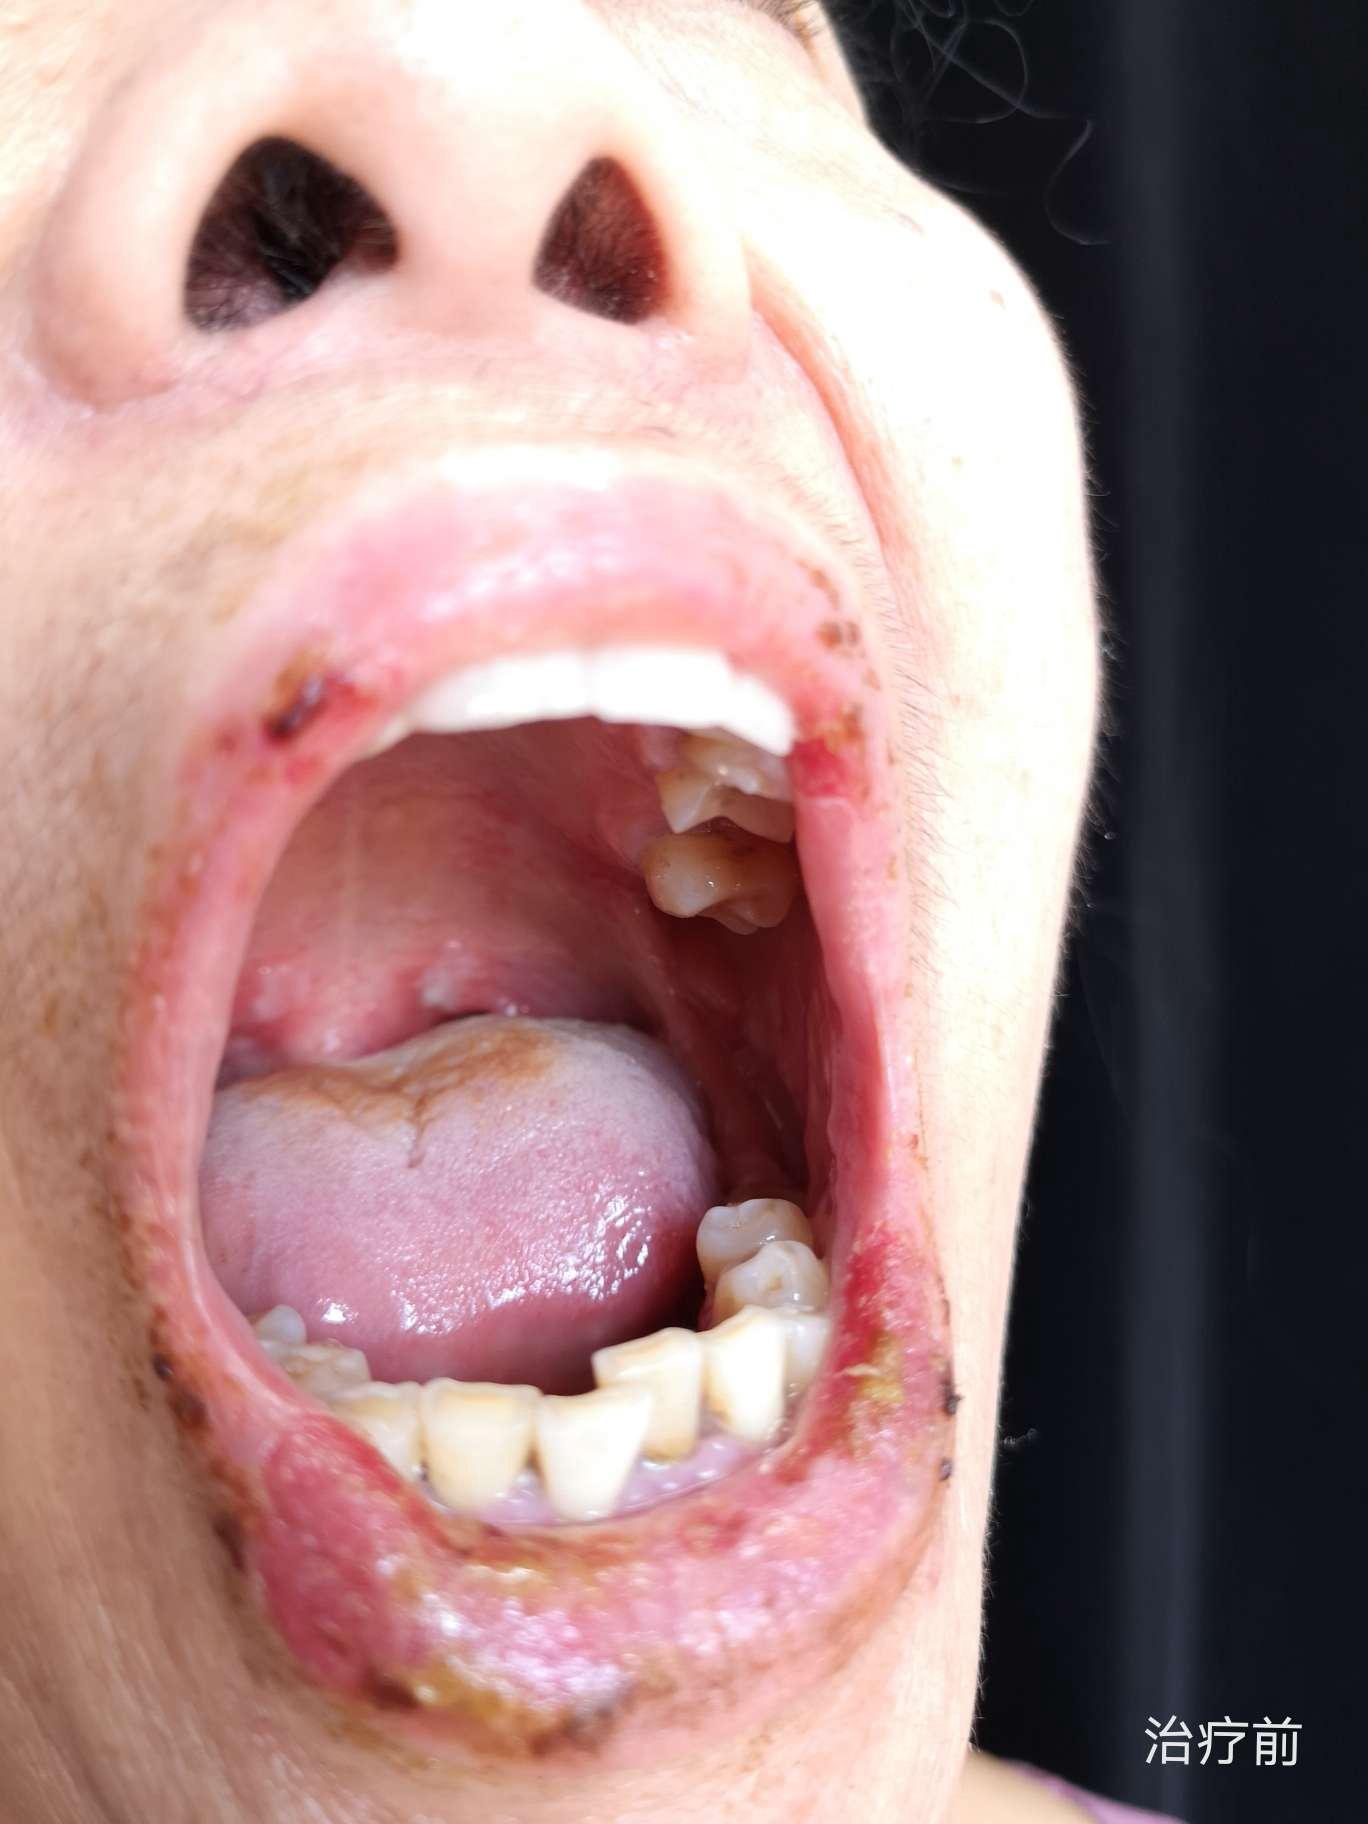 65岁患者口腔黏膜部位的天疱疮的诊断与治疗